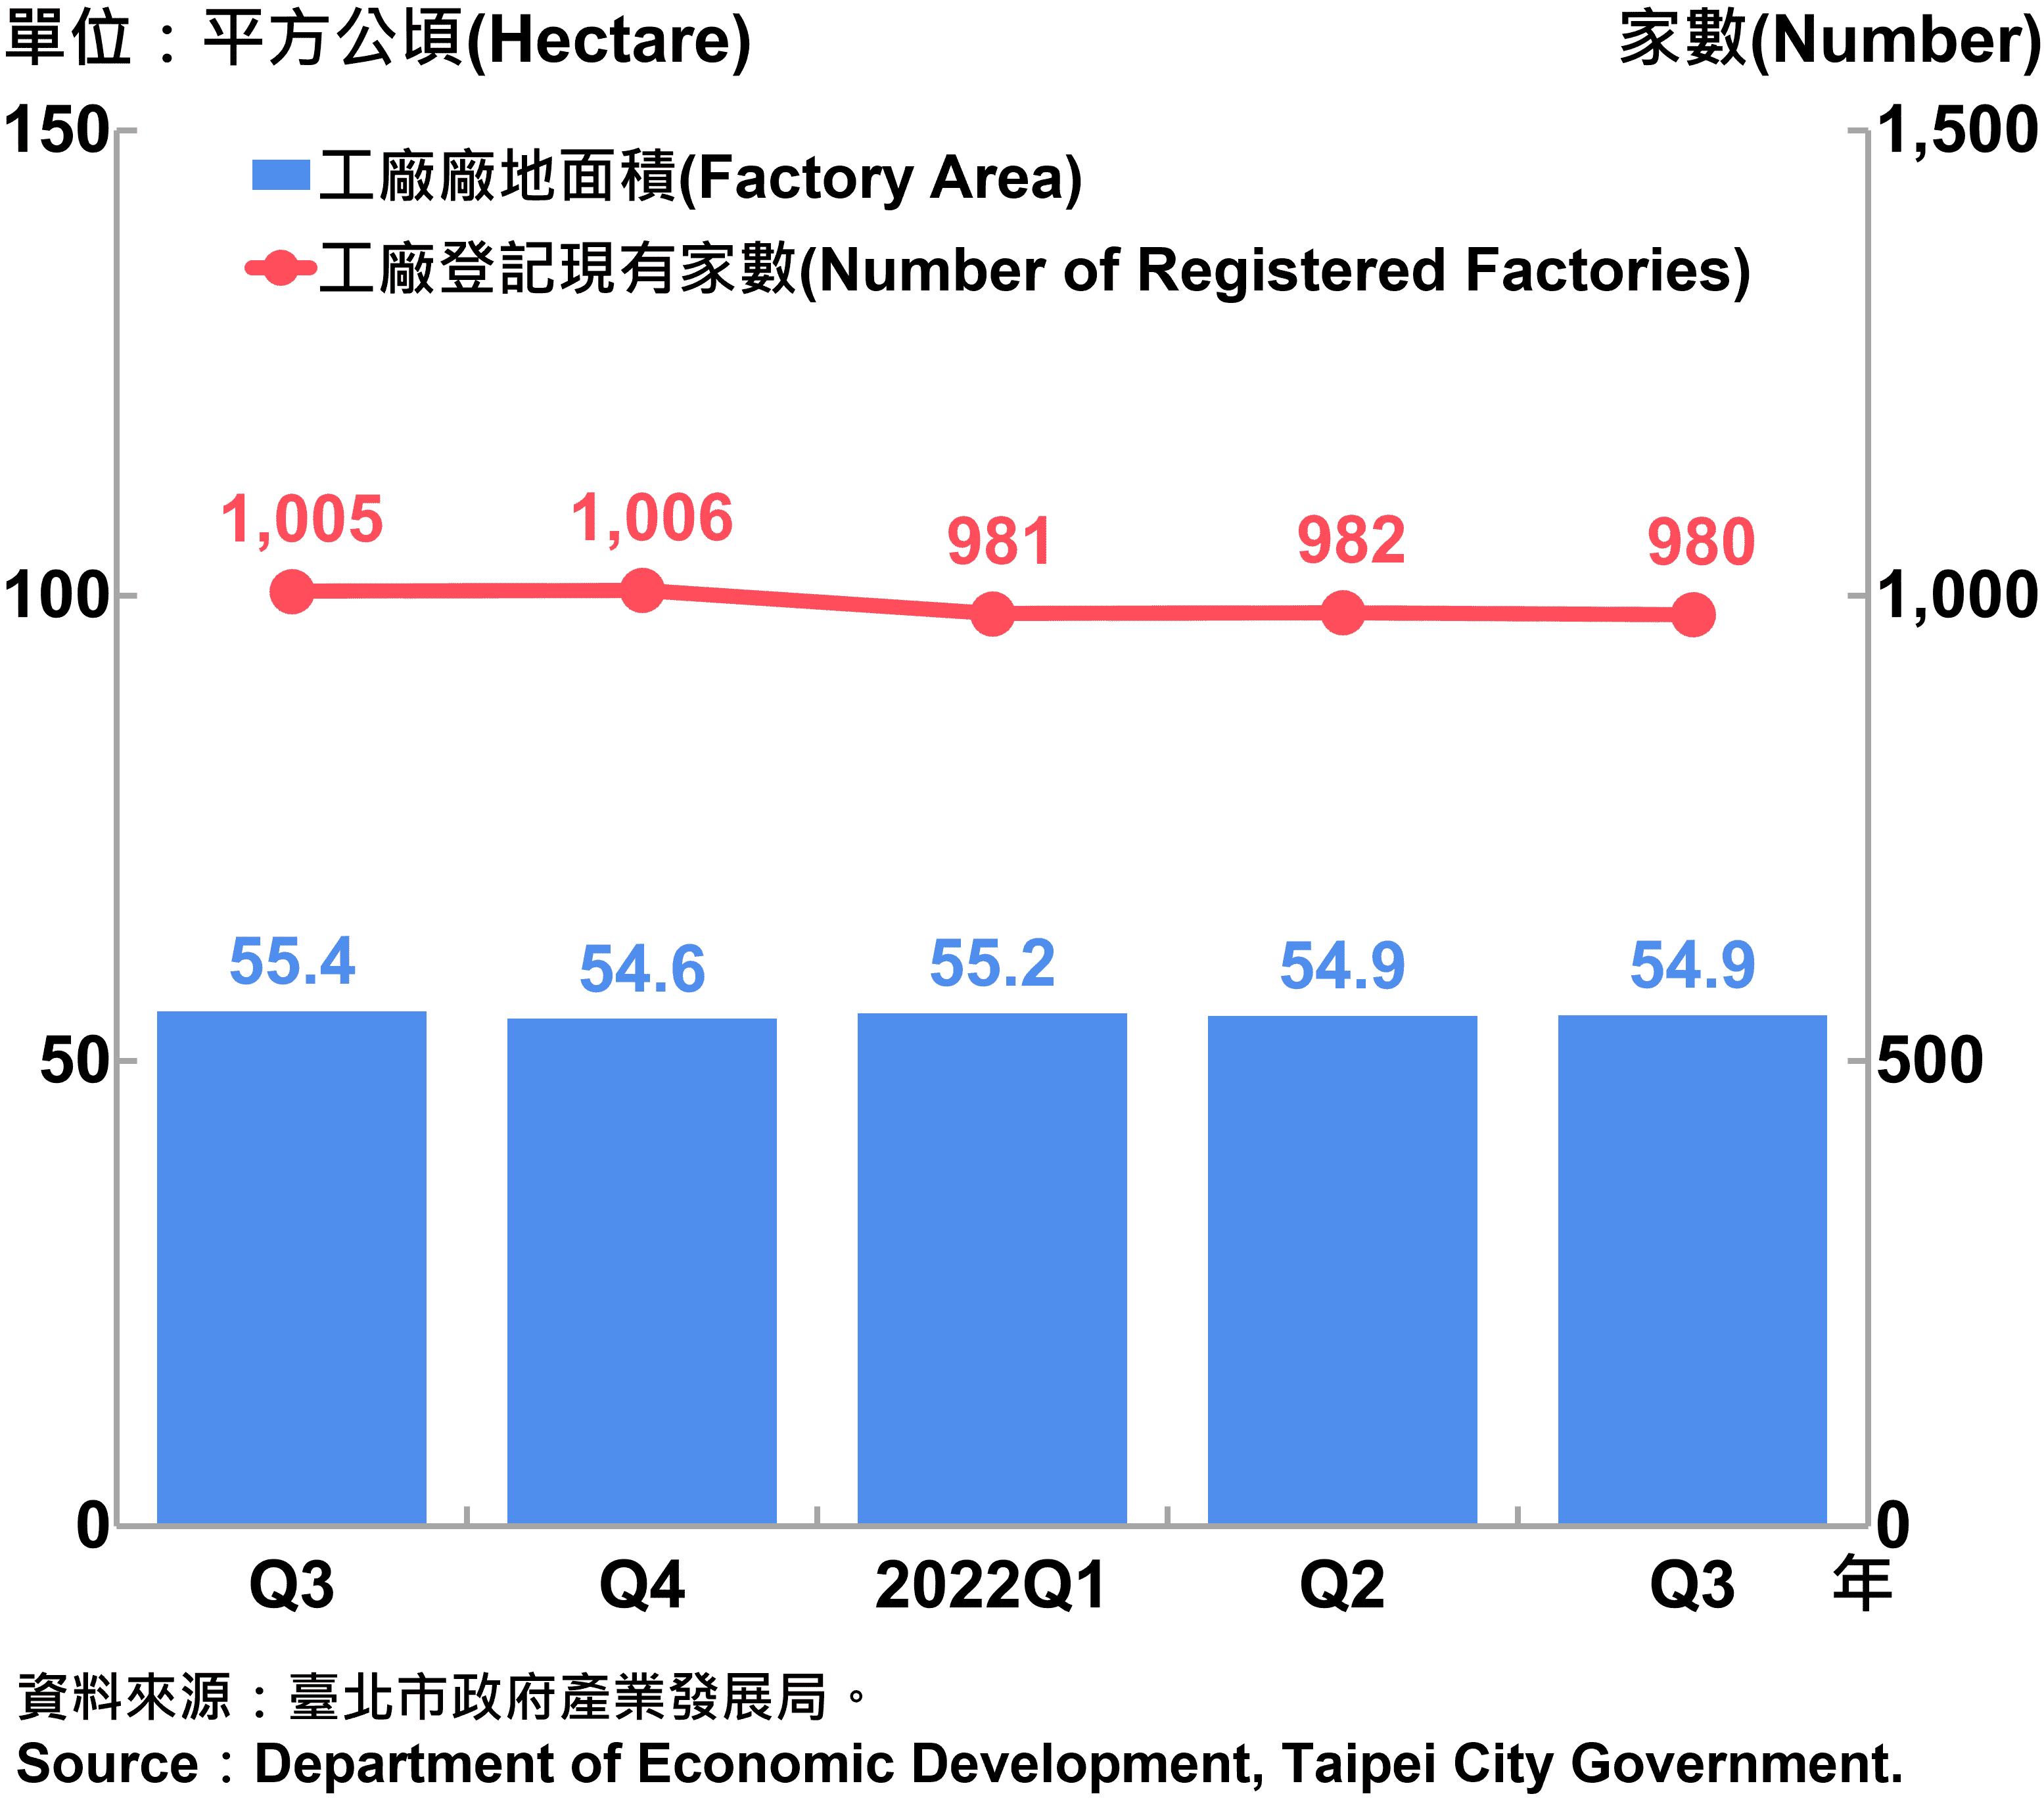 臺北市工廠登記家數及廠地面積—2022Q3 Factory Registration and Factory Area in Taipei City—2022Q3